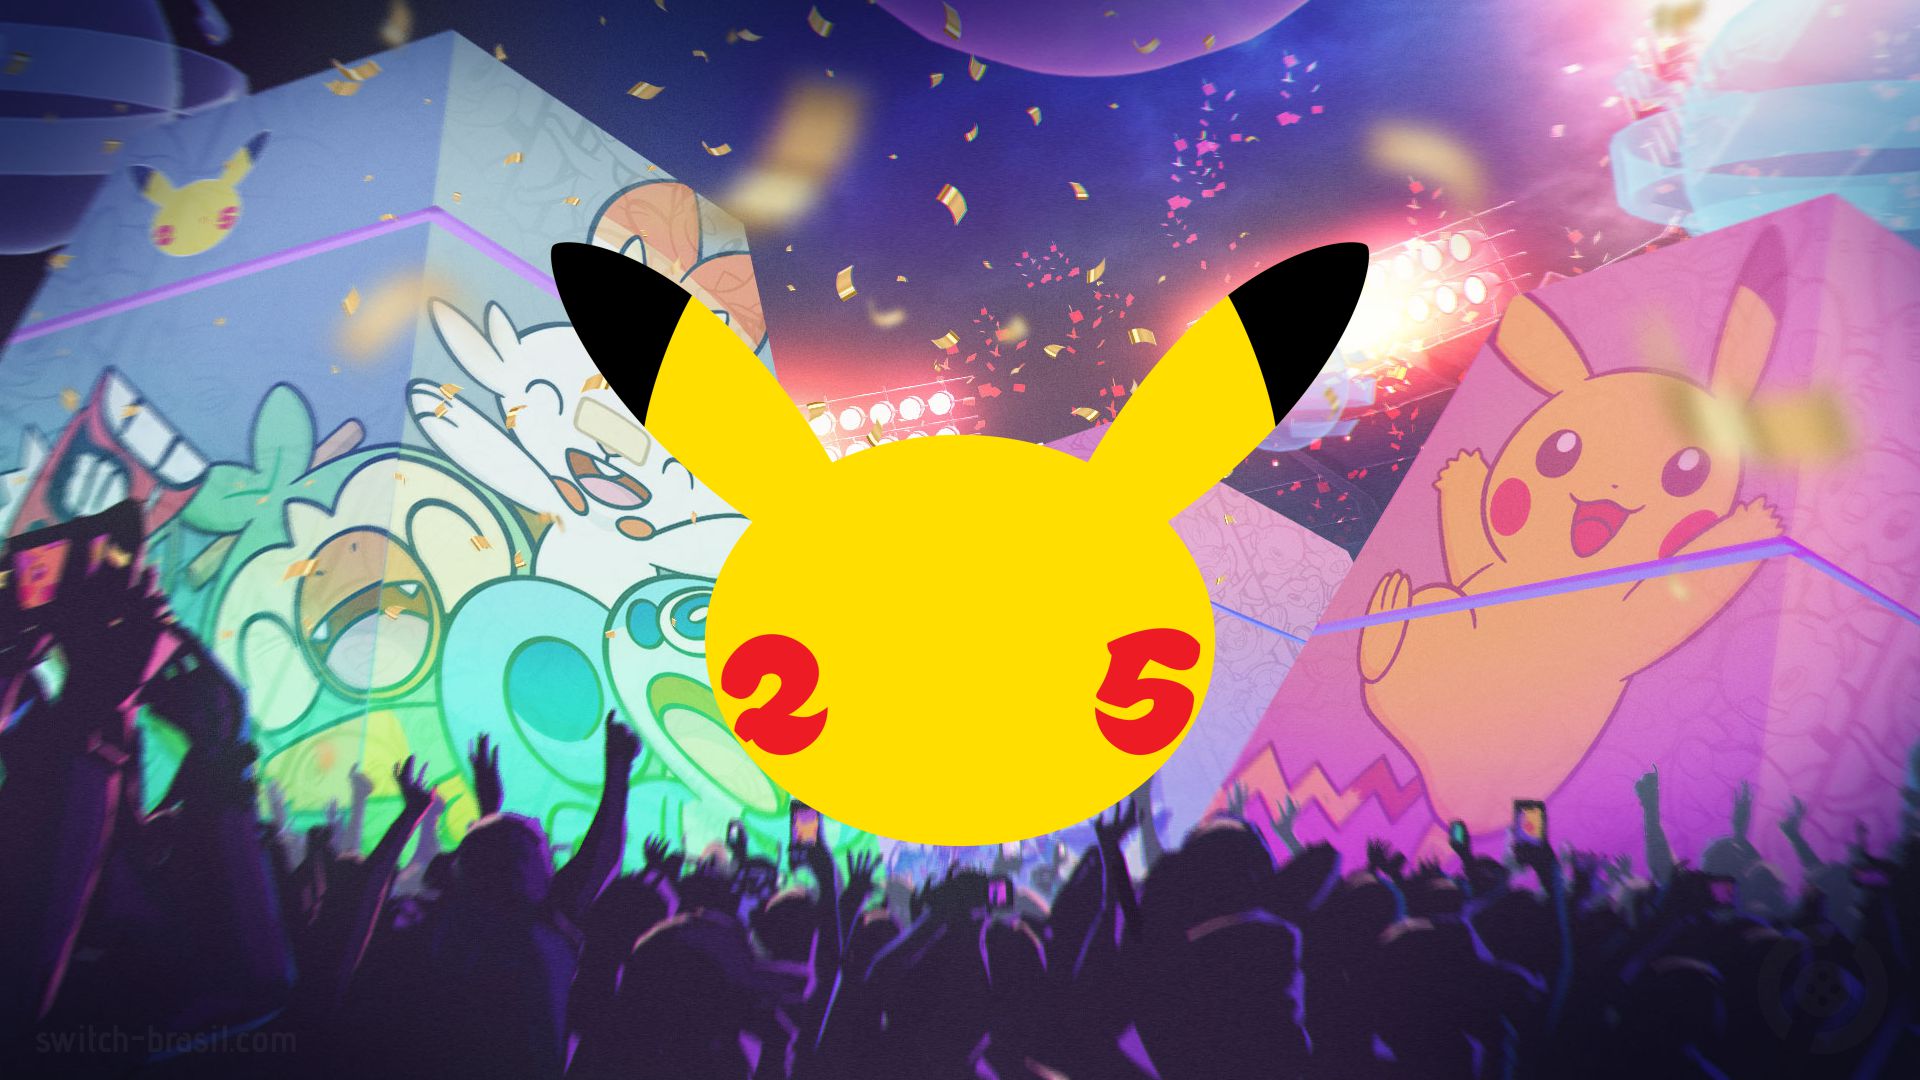 Comemorando os 25 anos com Celebrações do Pokémon Estampas Ilustradas